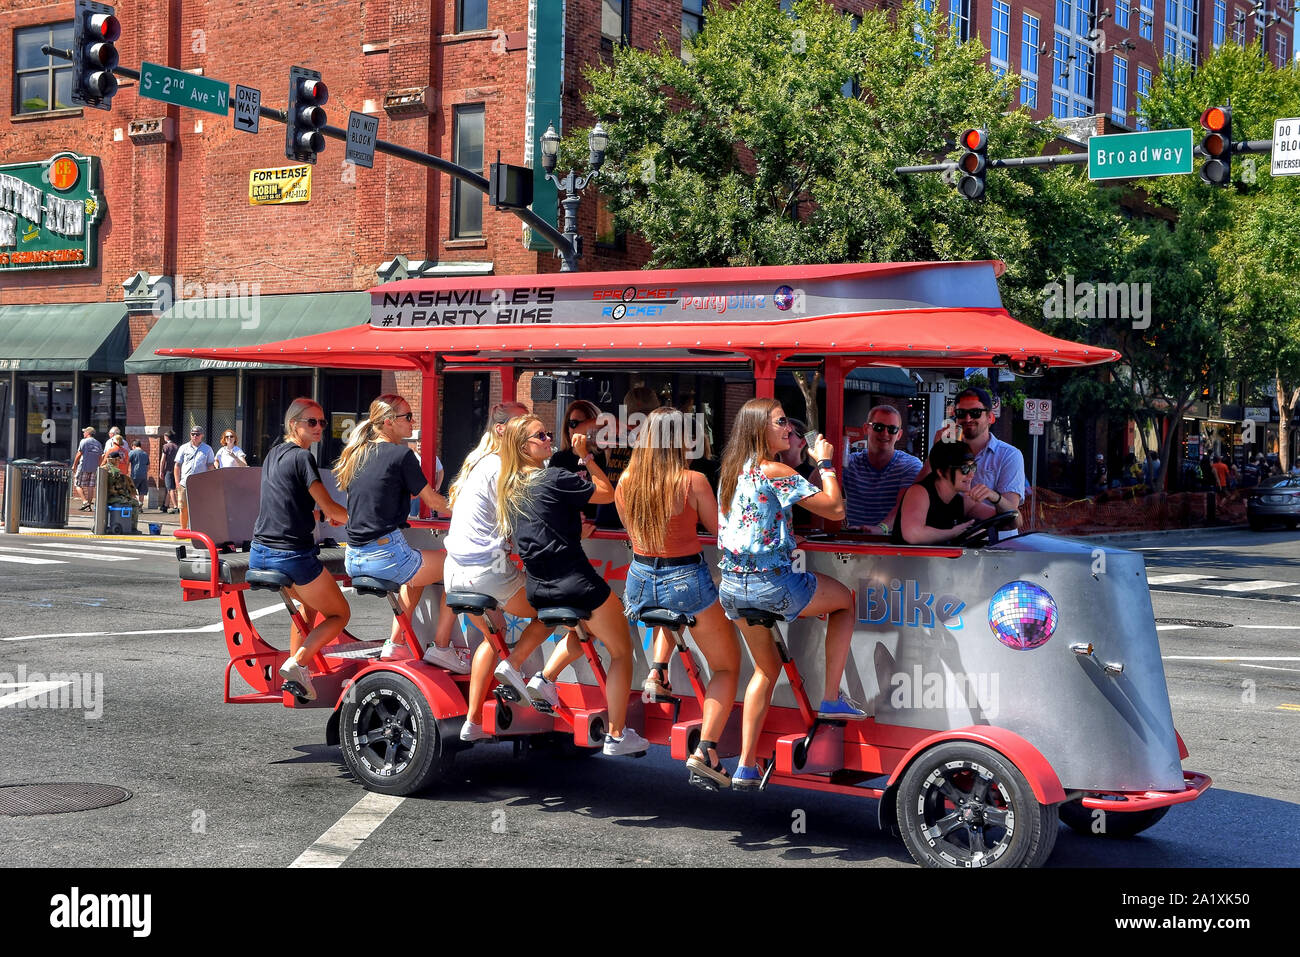 Nashville, Tennessee, USA - 21 septembre 2019 : la Bohème y prendre un verre sur un pignon Rocket bike pédale tavern sur Broadway Street. Ces véhicules sont alimentés Banque D'Images